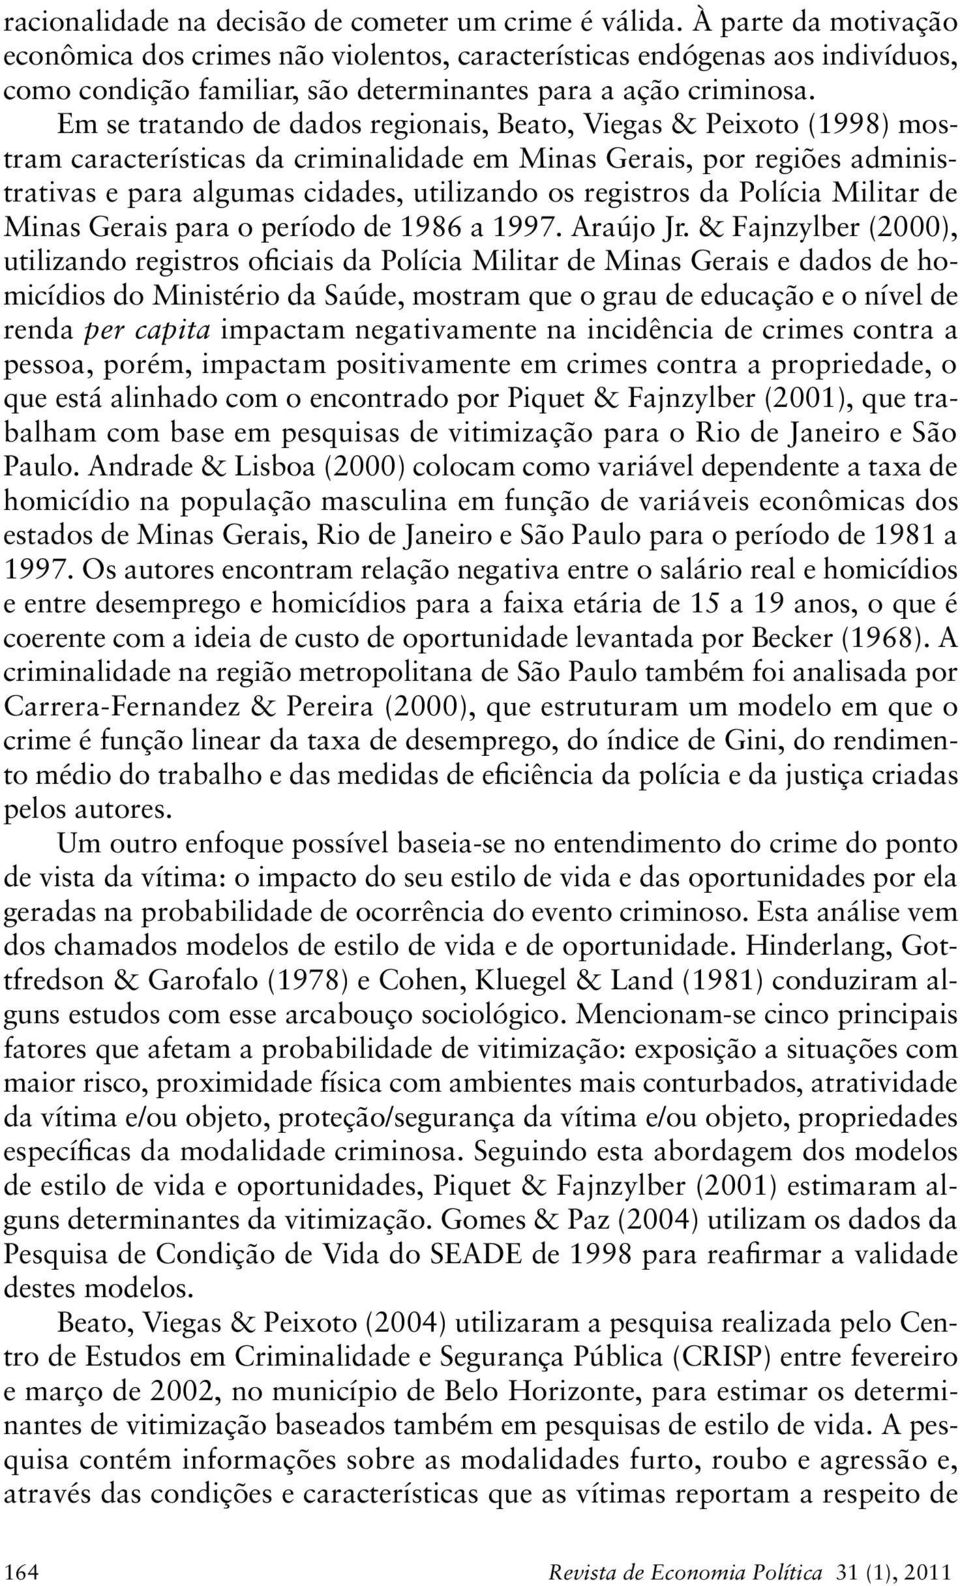 Em se tratando de dados regionais, Beato, Viegas & Peixoto (1998) mostram características da criminalidade em Minas Gerais, por regiões administrativas e para algumas cidades, utilizando os registros